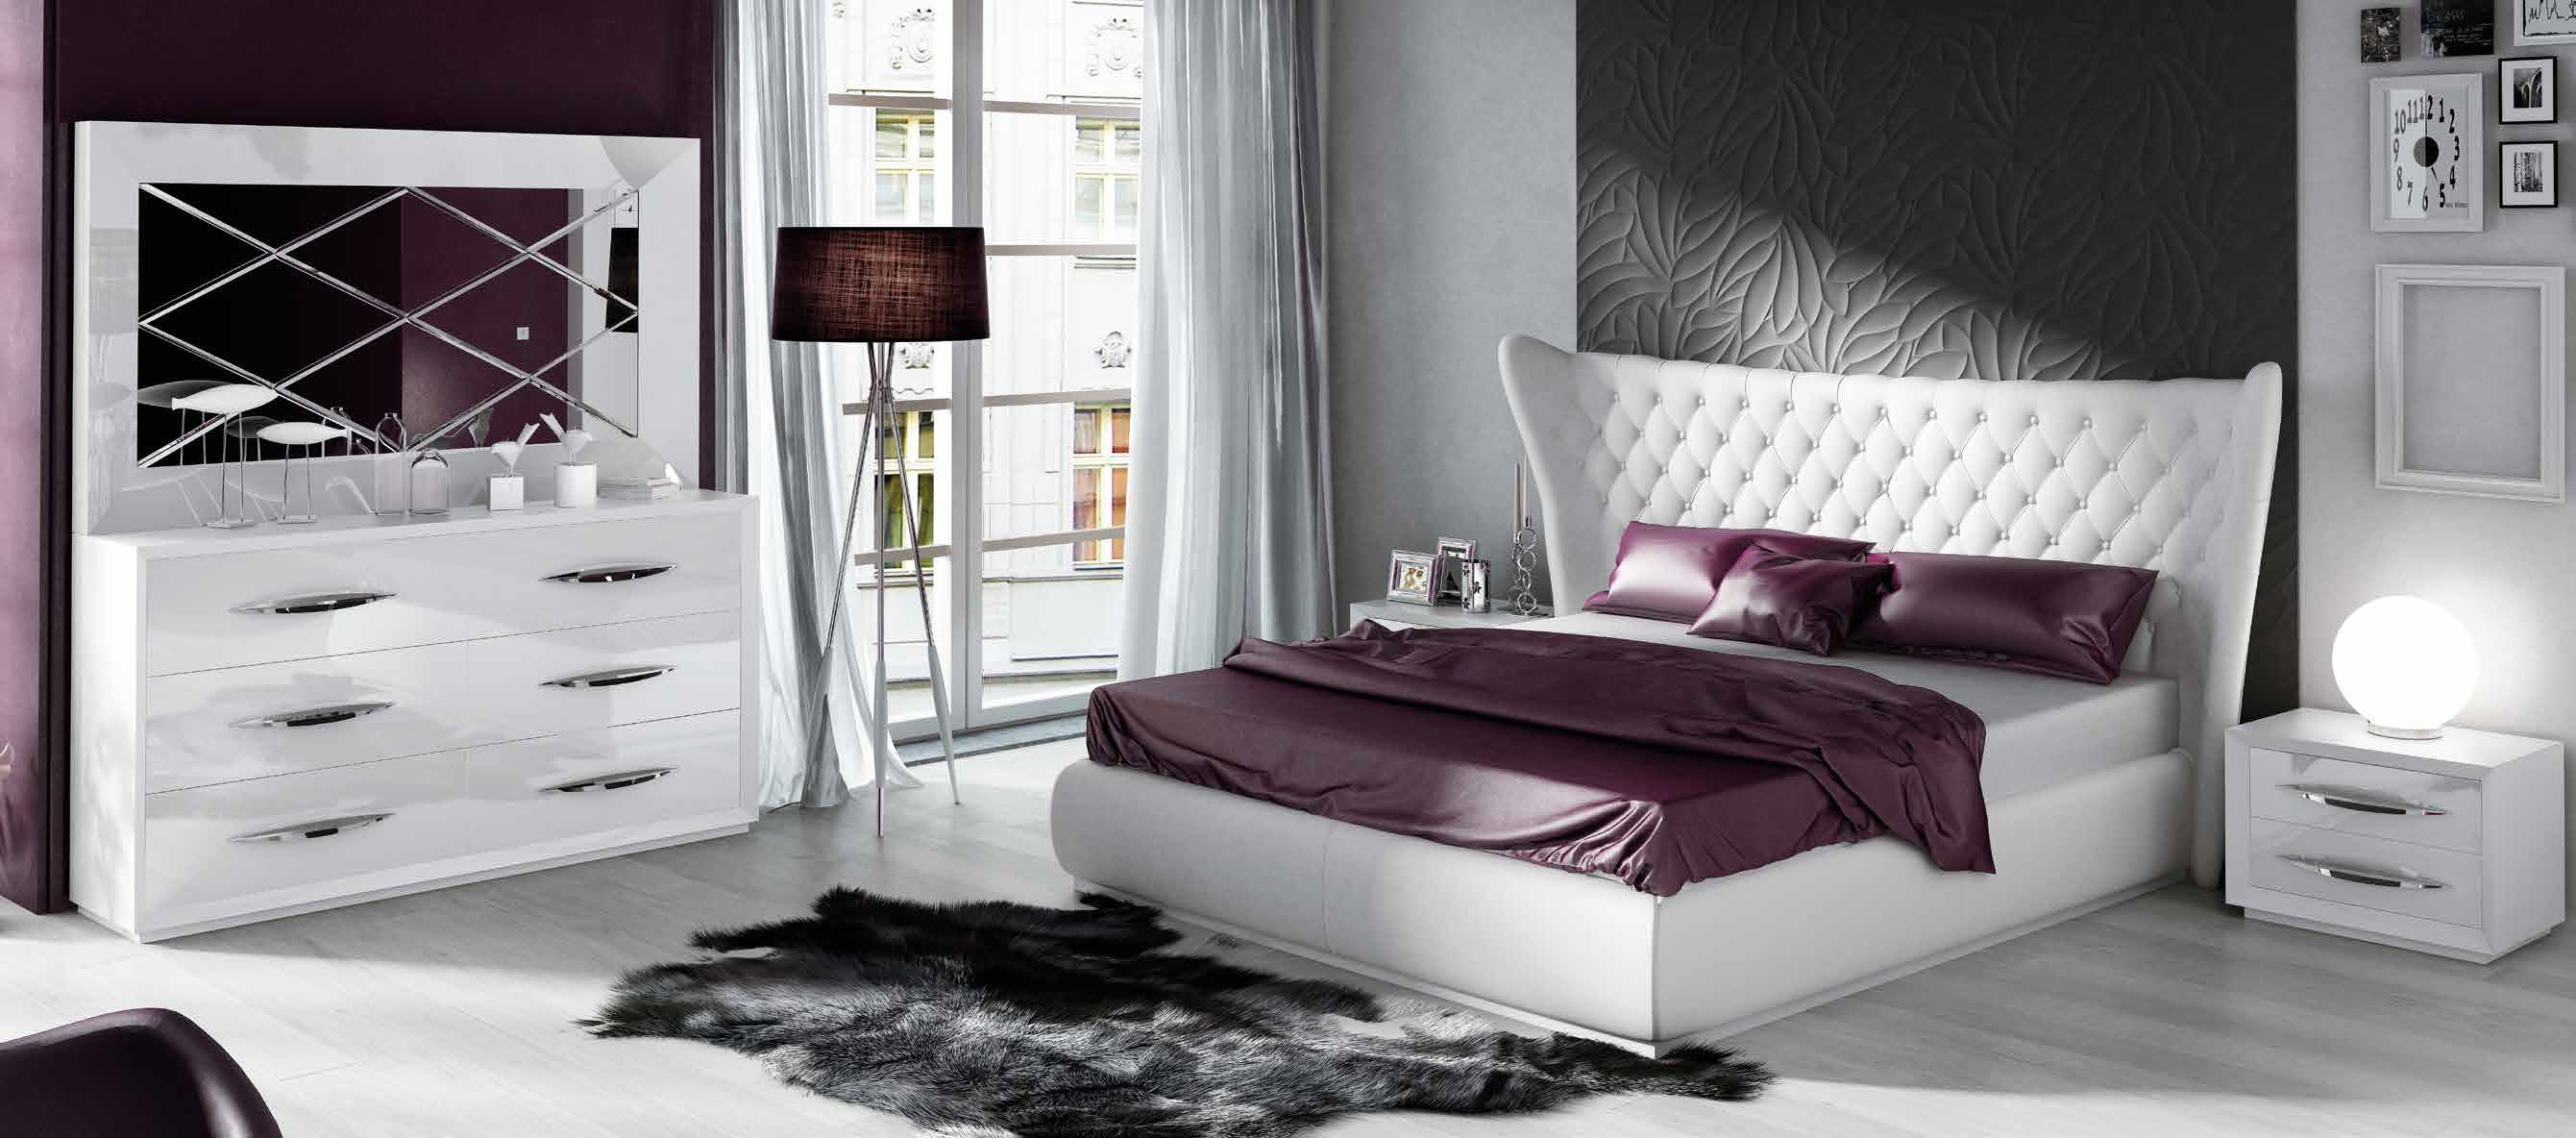 Brands Franco Furniture Avanty Bedrooms, Spain DOR 83